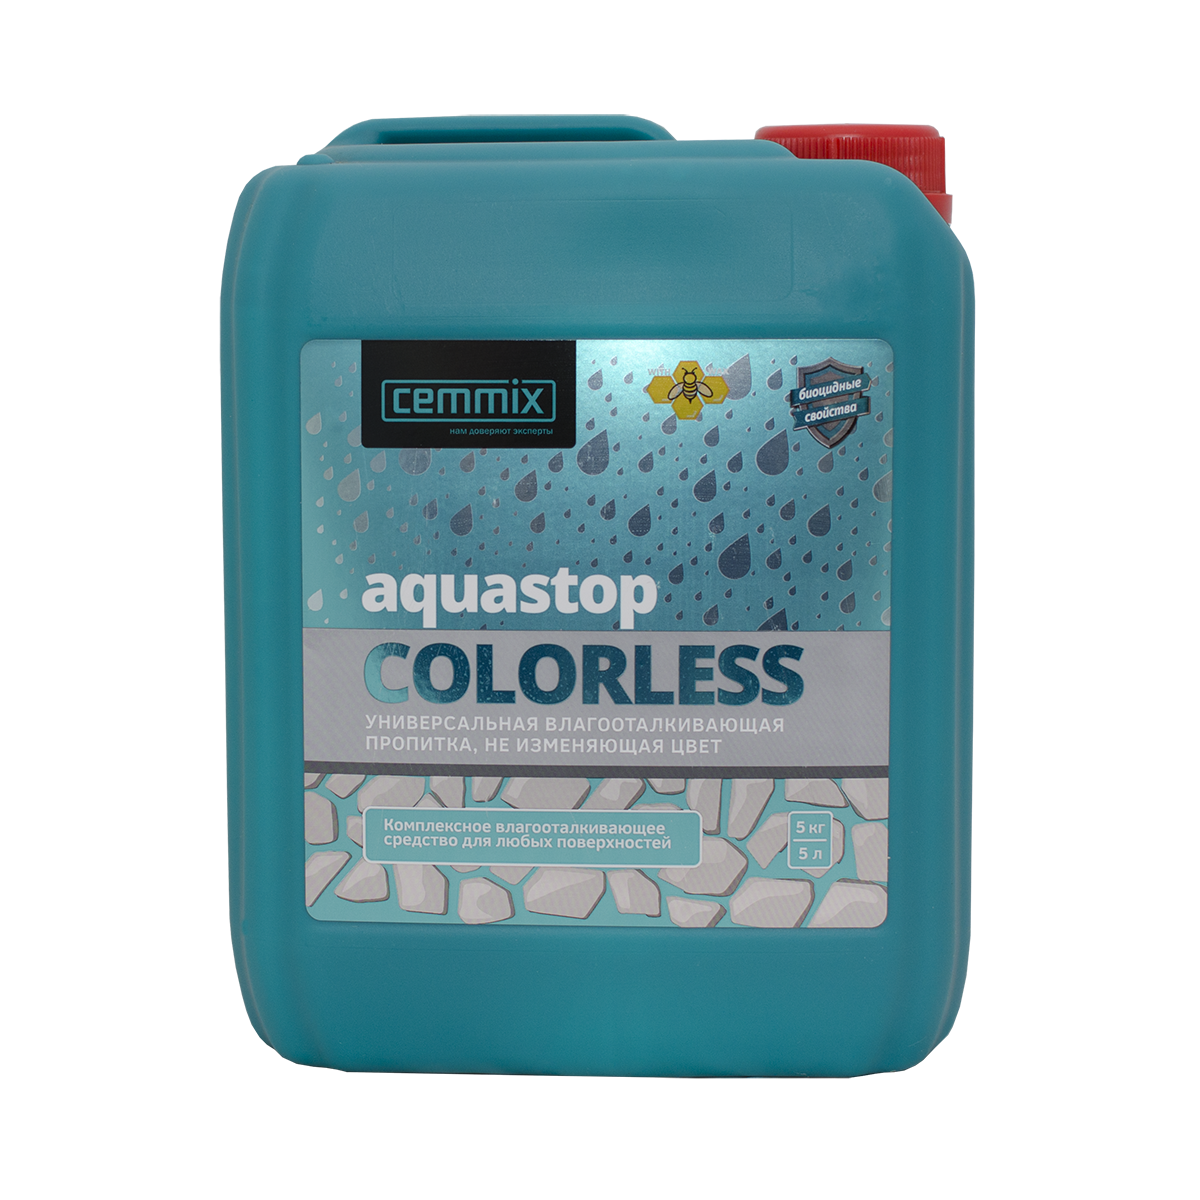 AquaStop Colorless